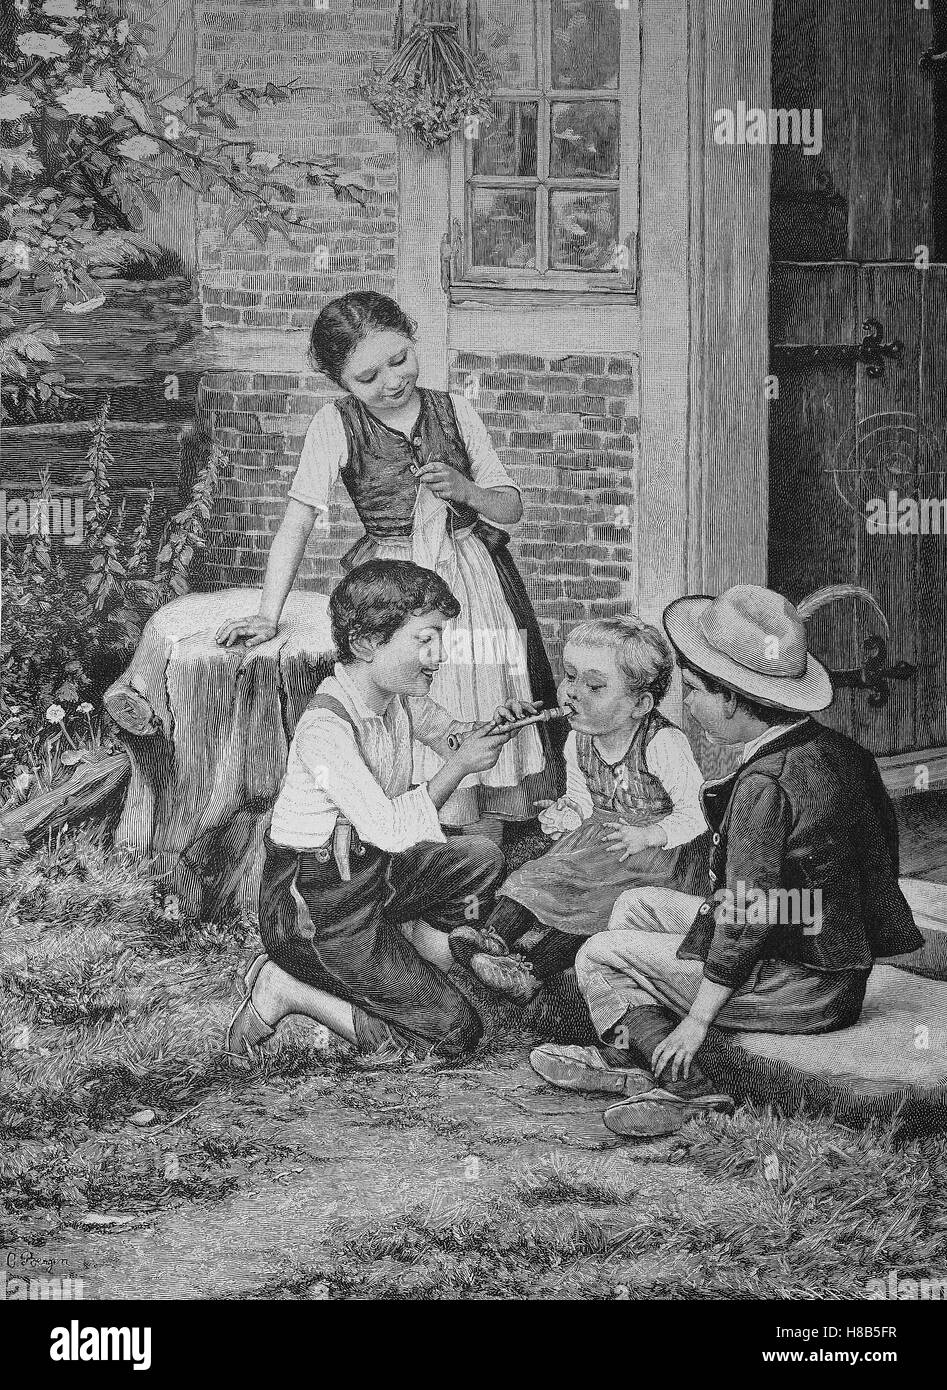 Bambini pratica riproduzione di flauto, Xilografia dal 1892 Foto Stock